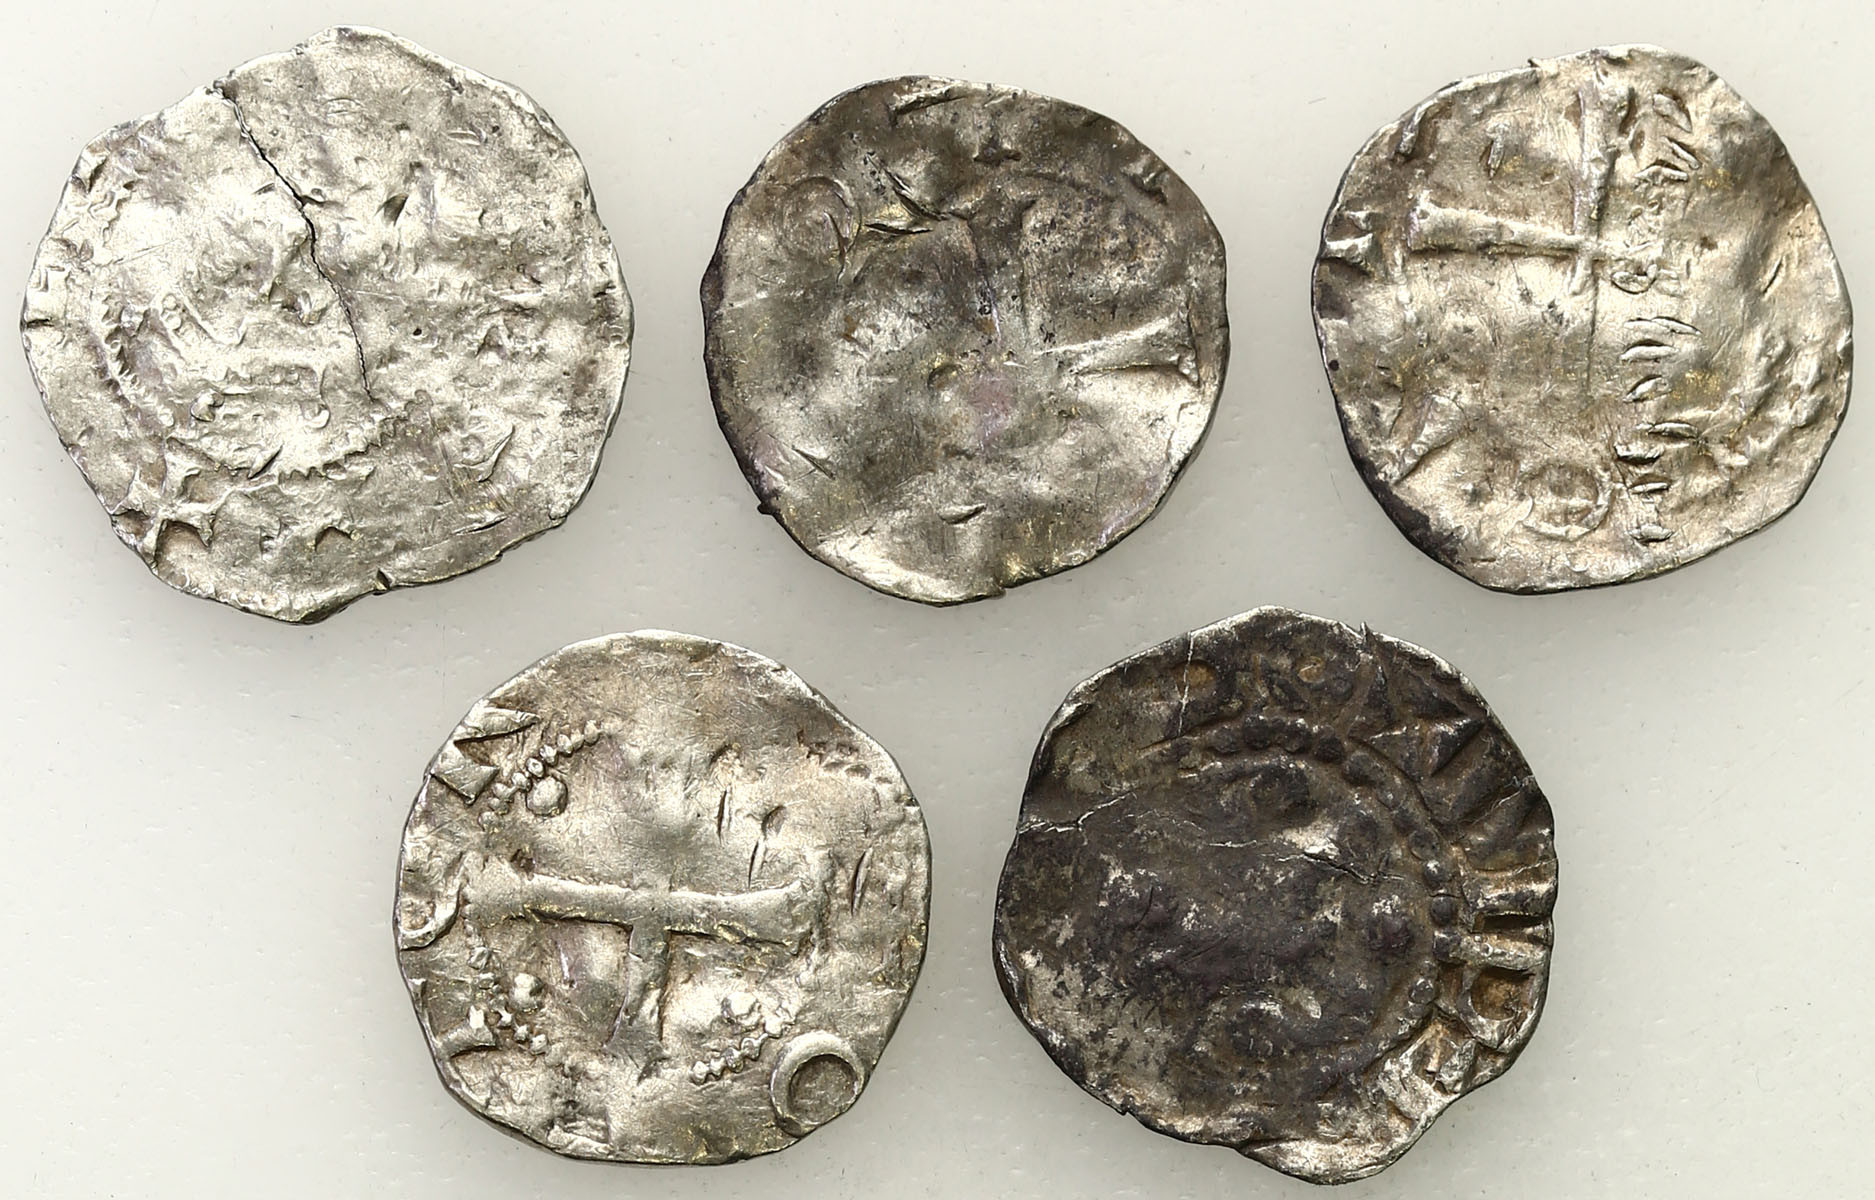 Niemcy, Dolna Lotaryngia - Kolonia, X/XI wiek. Denar typu kolońskiego i ich naśladownictwa, zestaw 5 monet